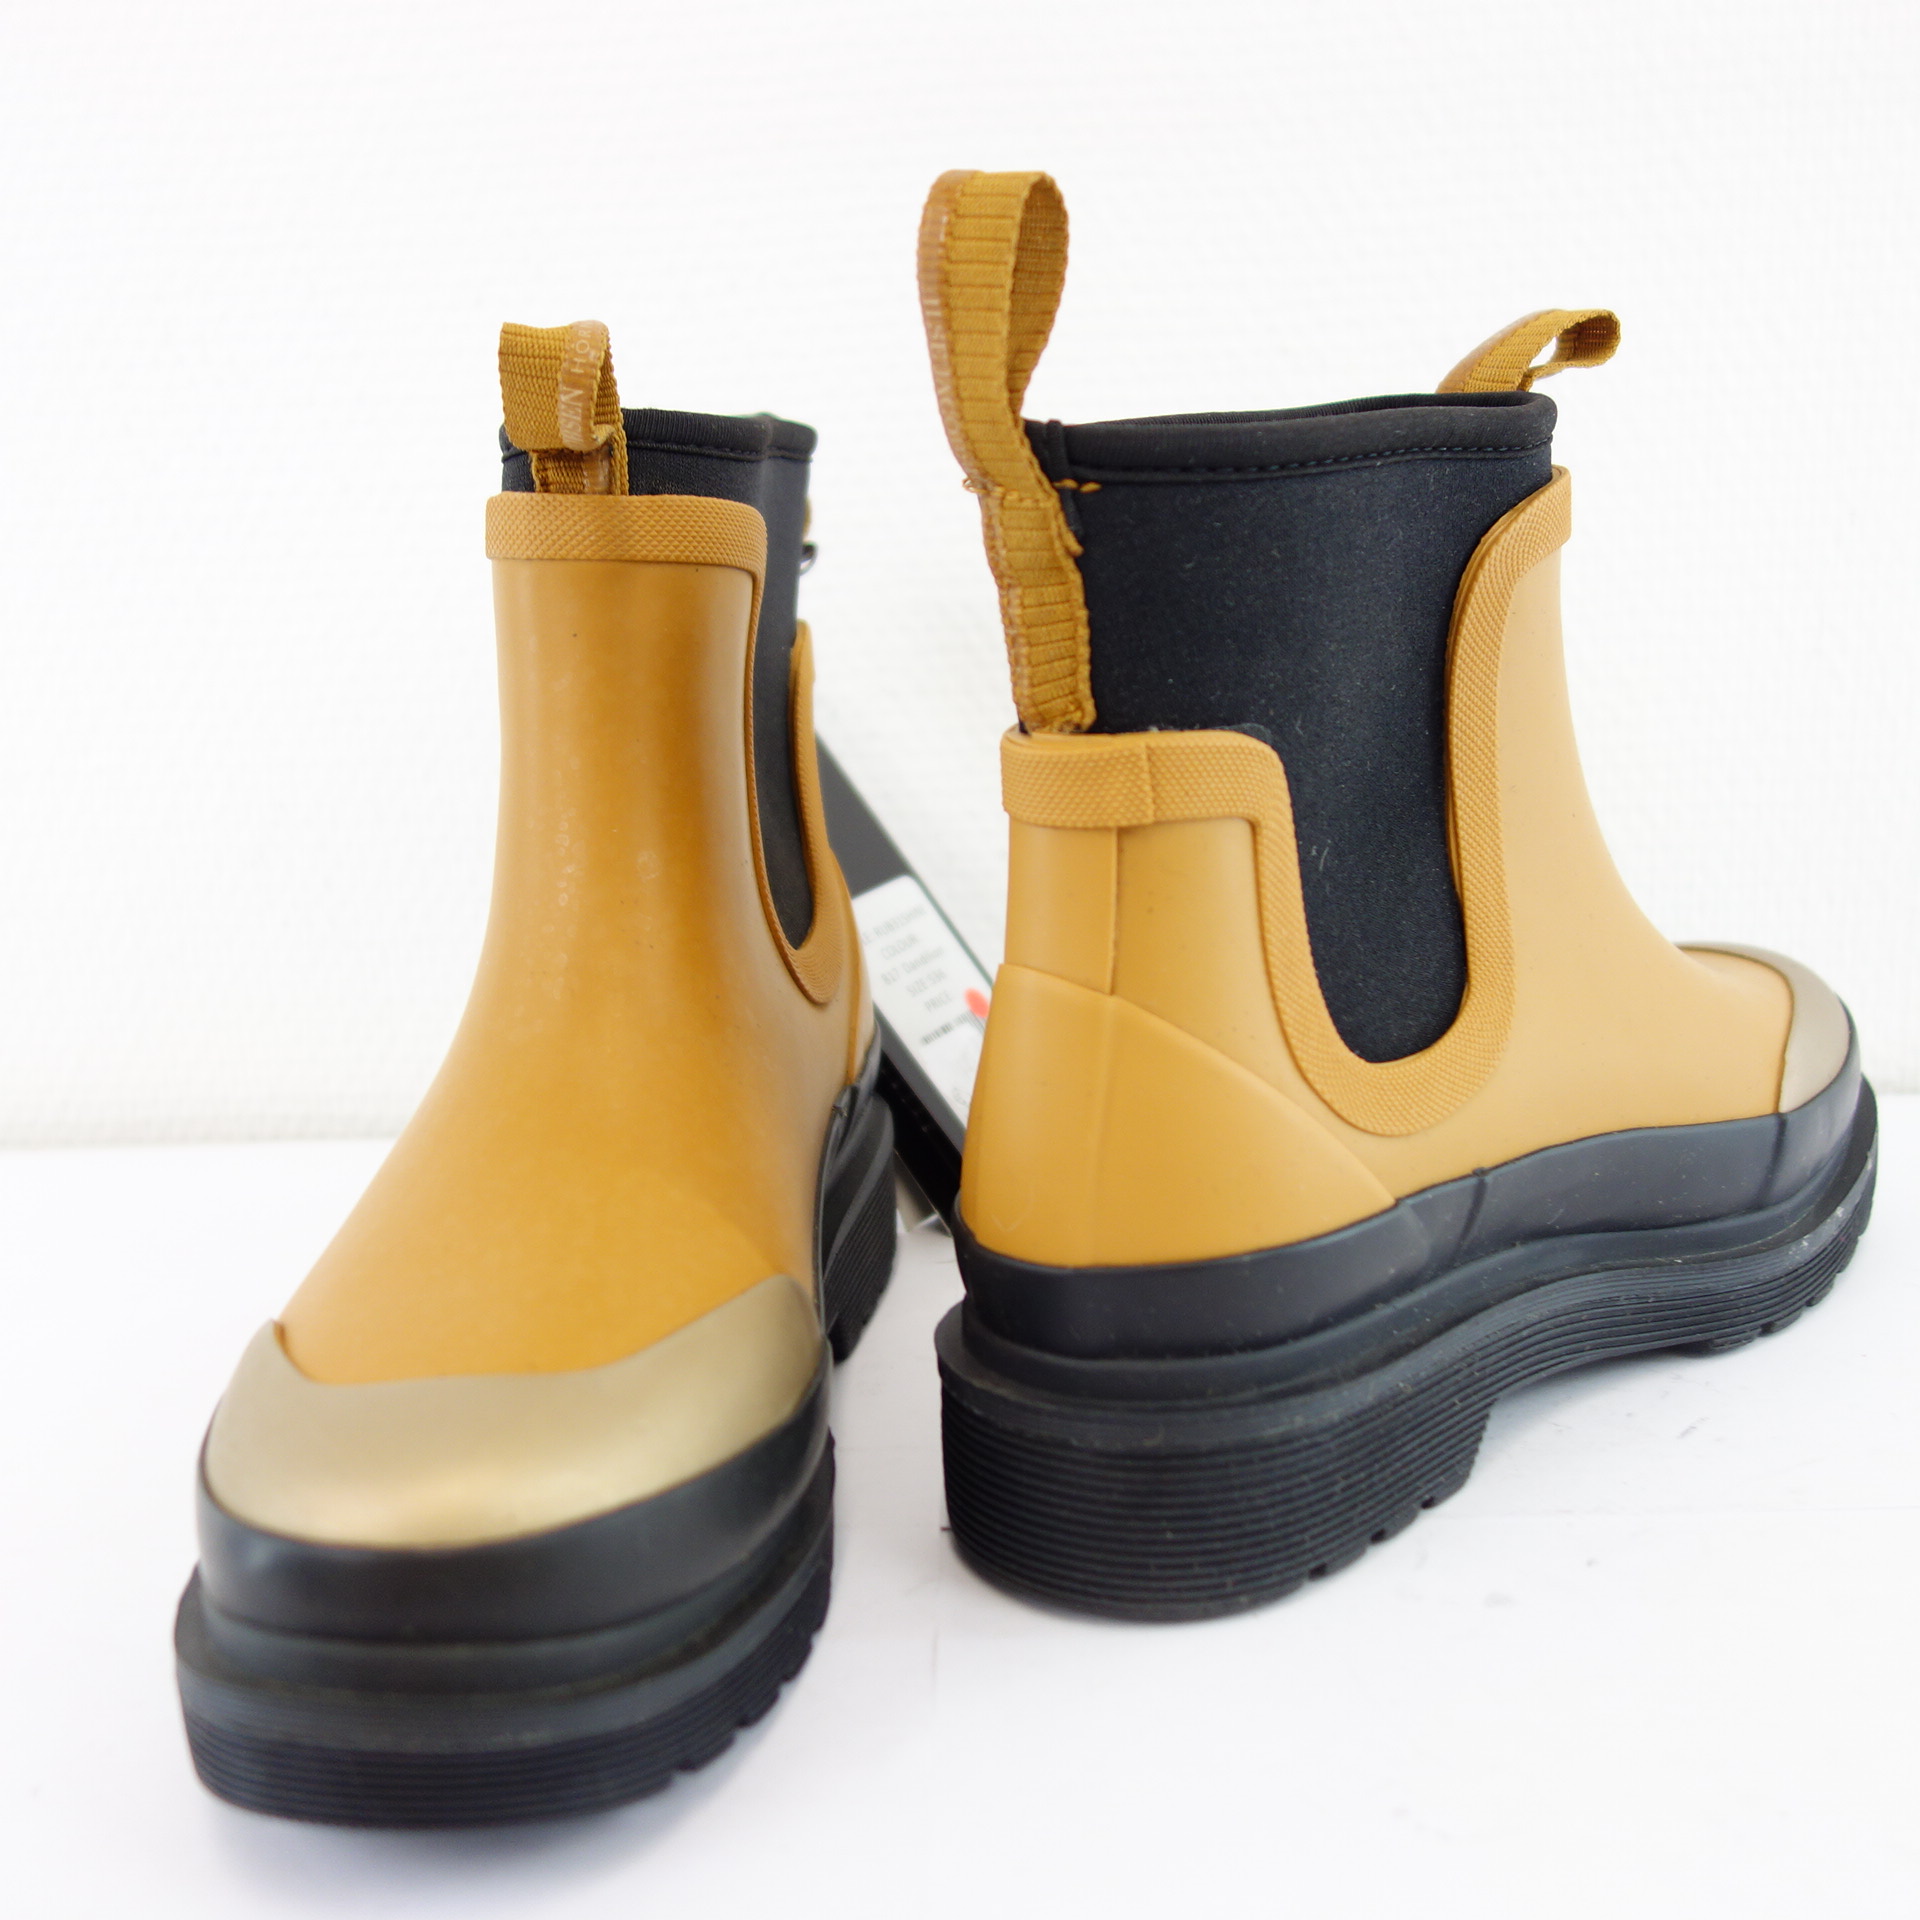 ILSE JACOBSEN Damen Schuhe Gummistiefel Gummi Stiefel Boots Mid Top Schwarz Braun Gold Größe 36